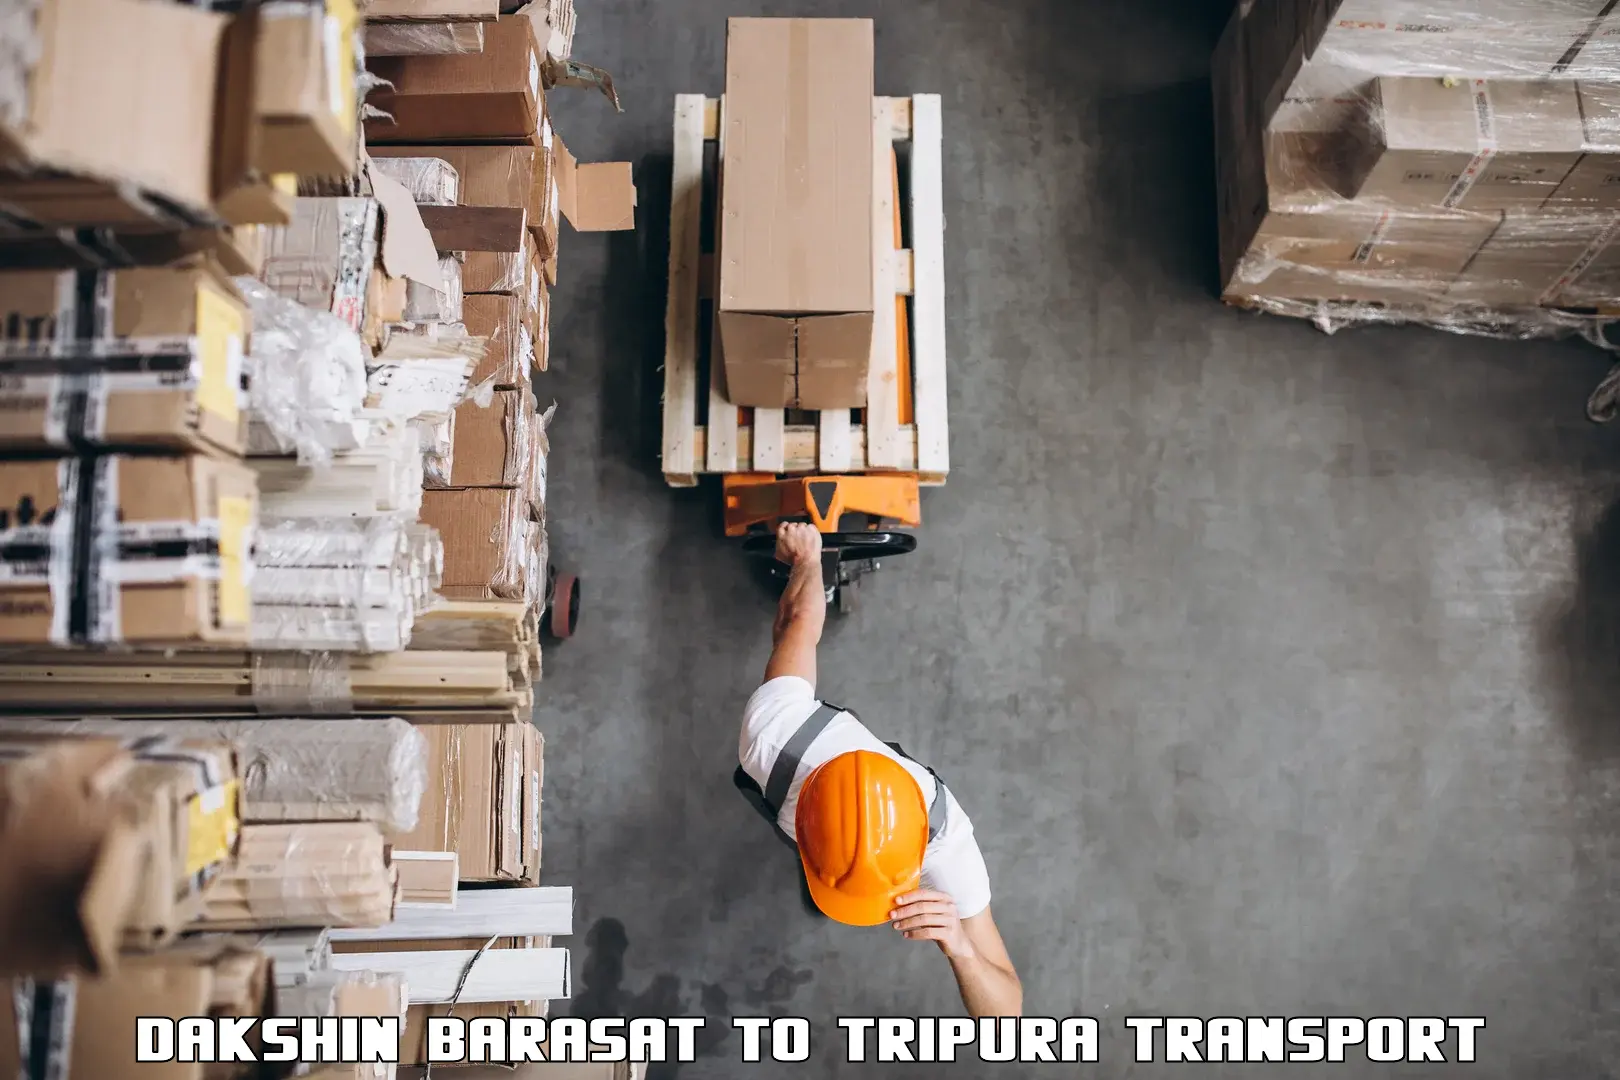 Shipping services Dakshin Barasat to Dharmanagar